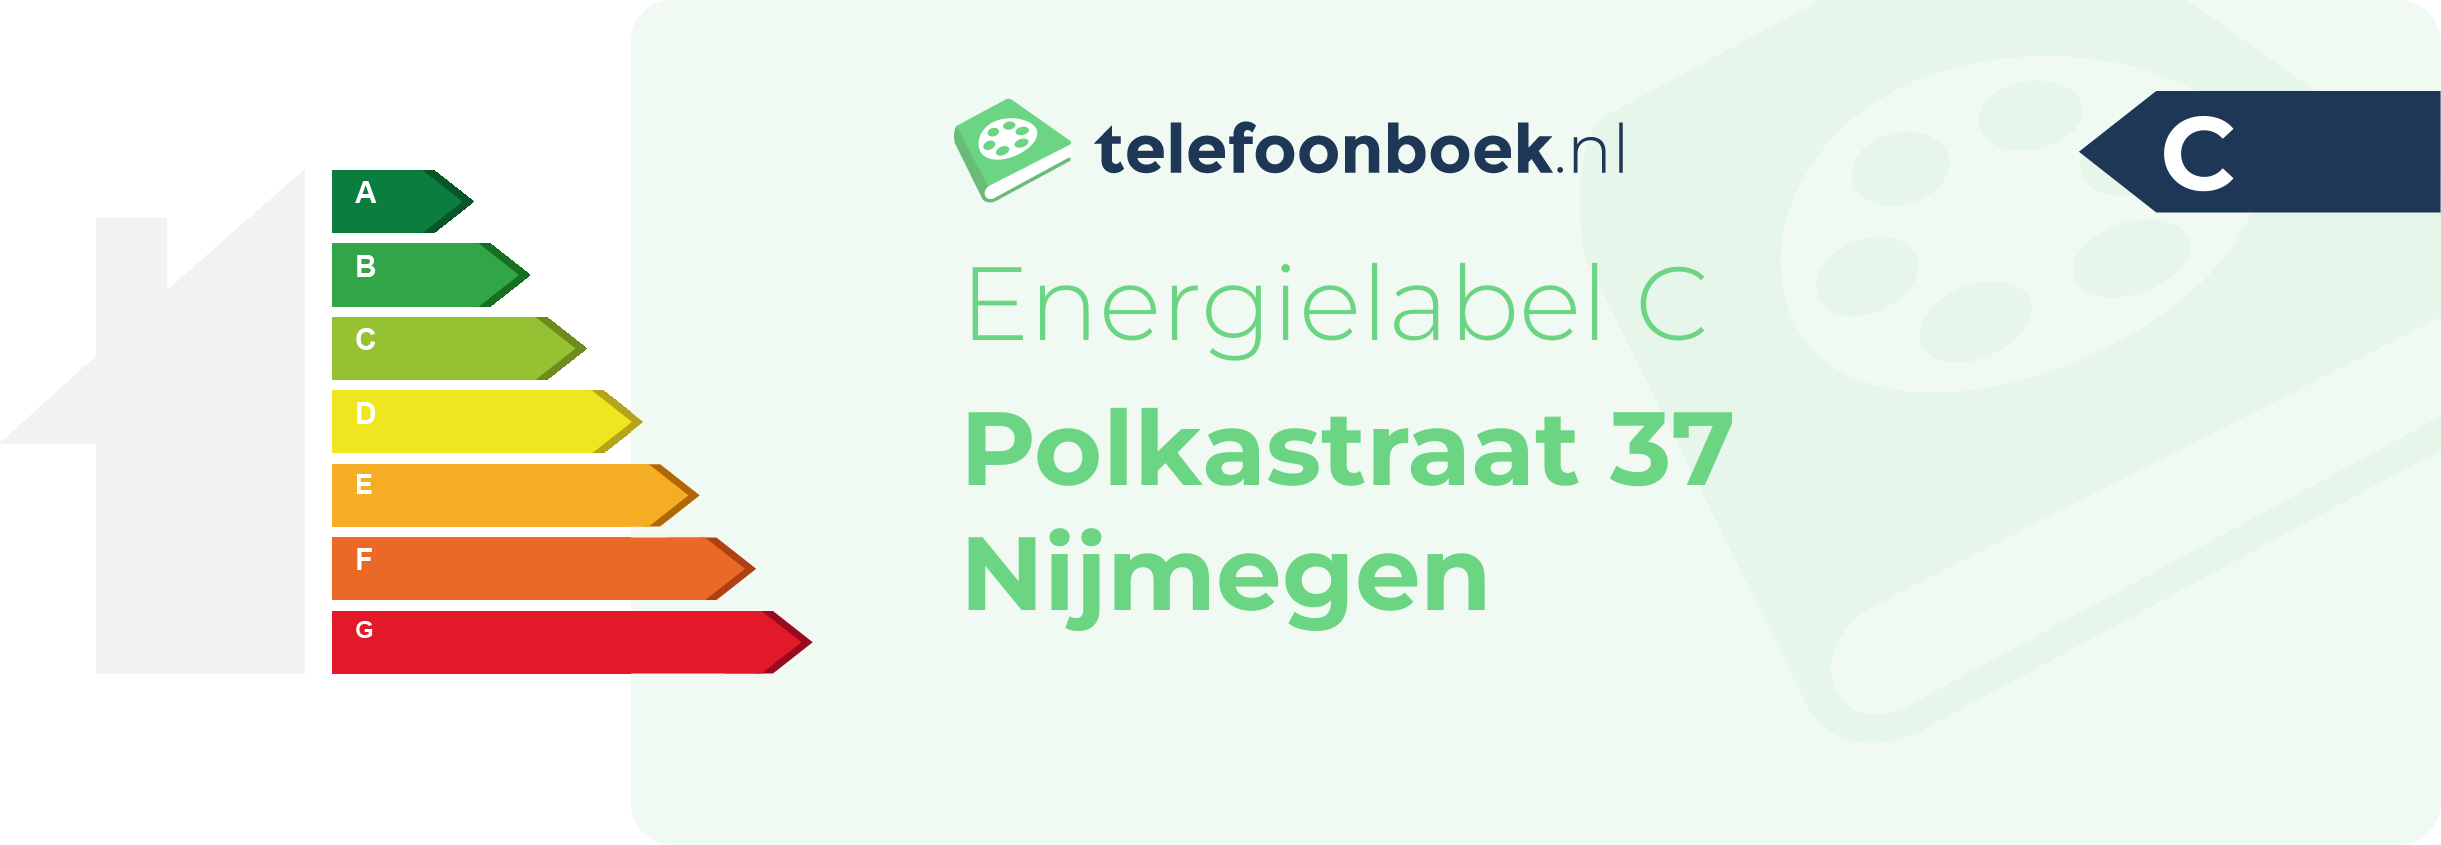 Energielabel Polkastraat 37 Nijmegen